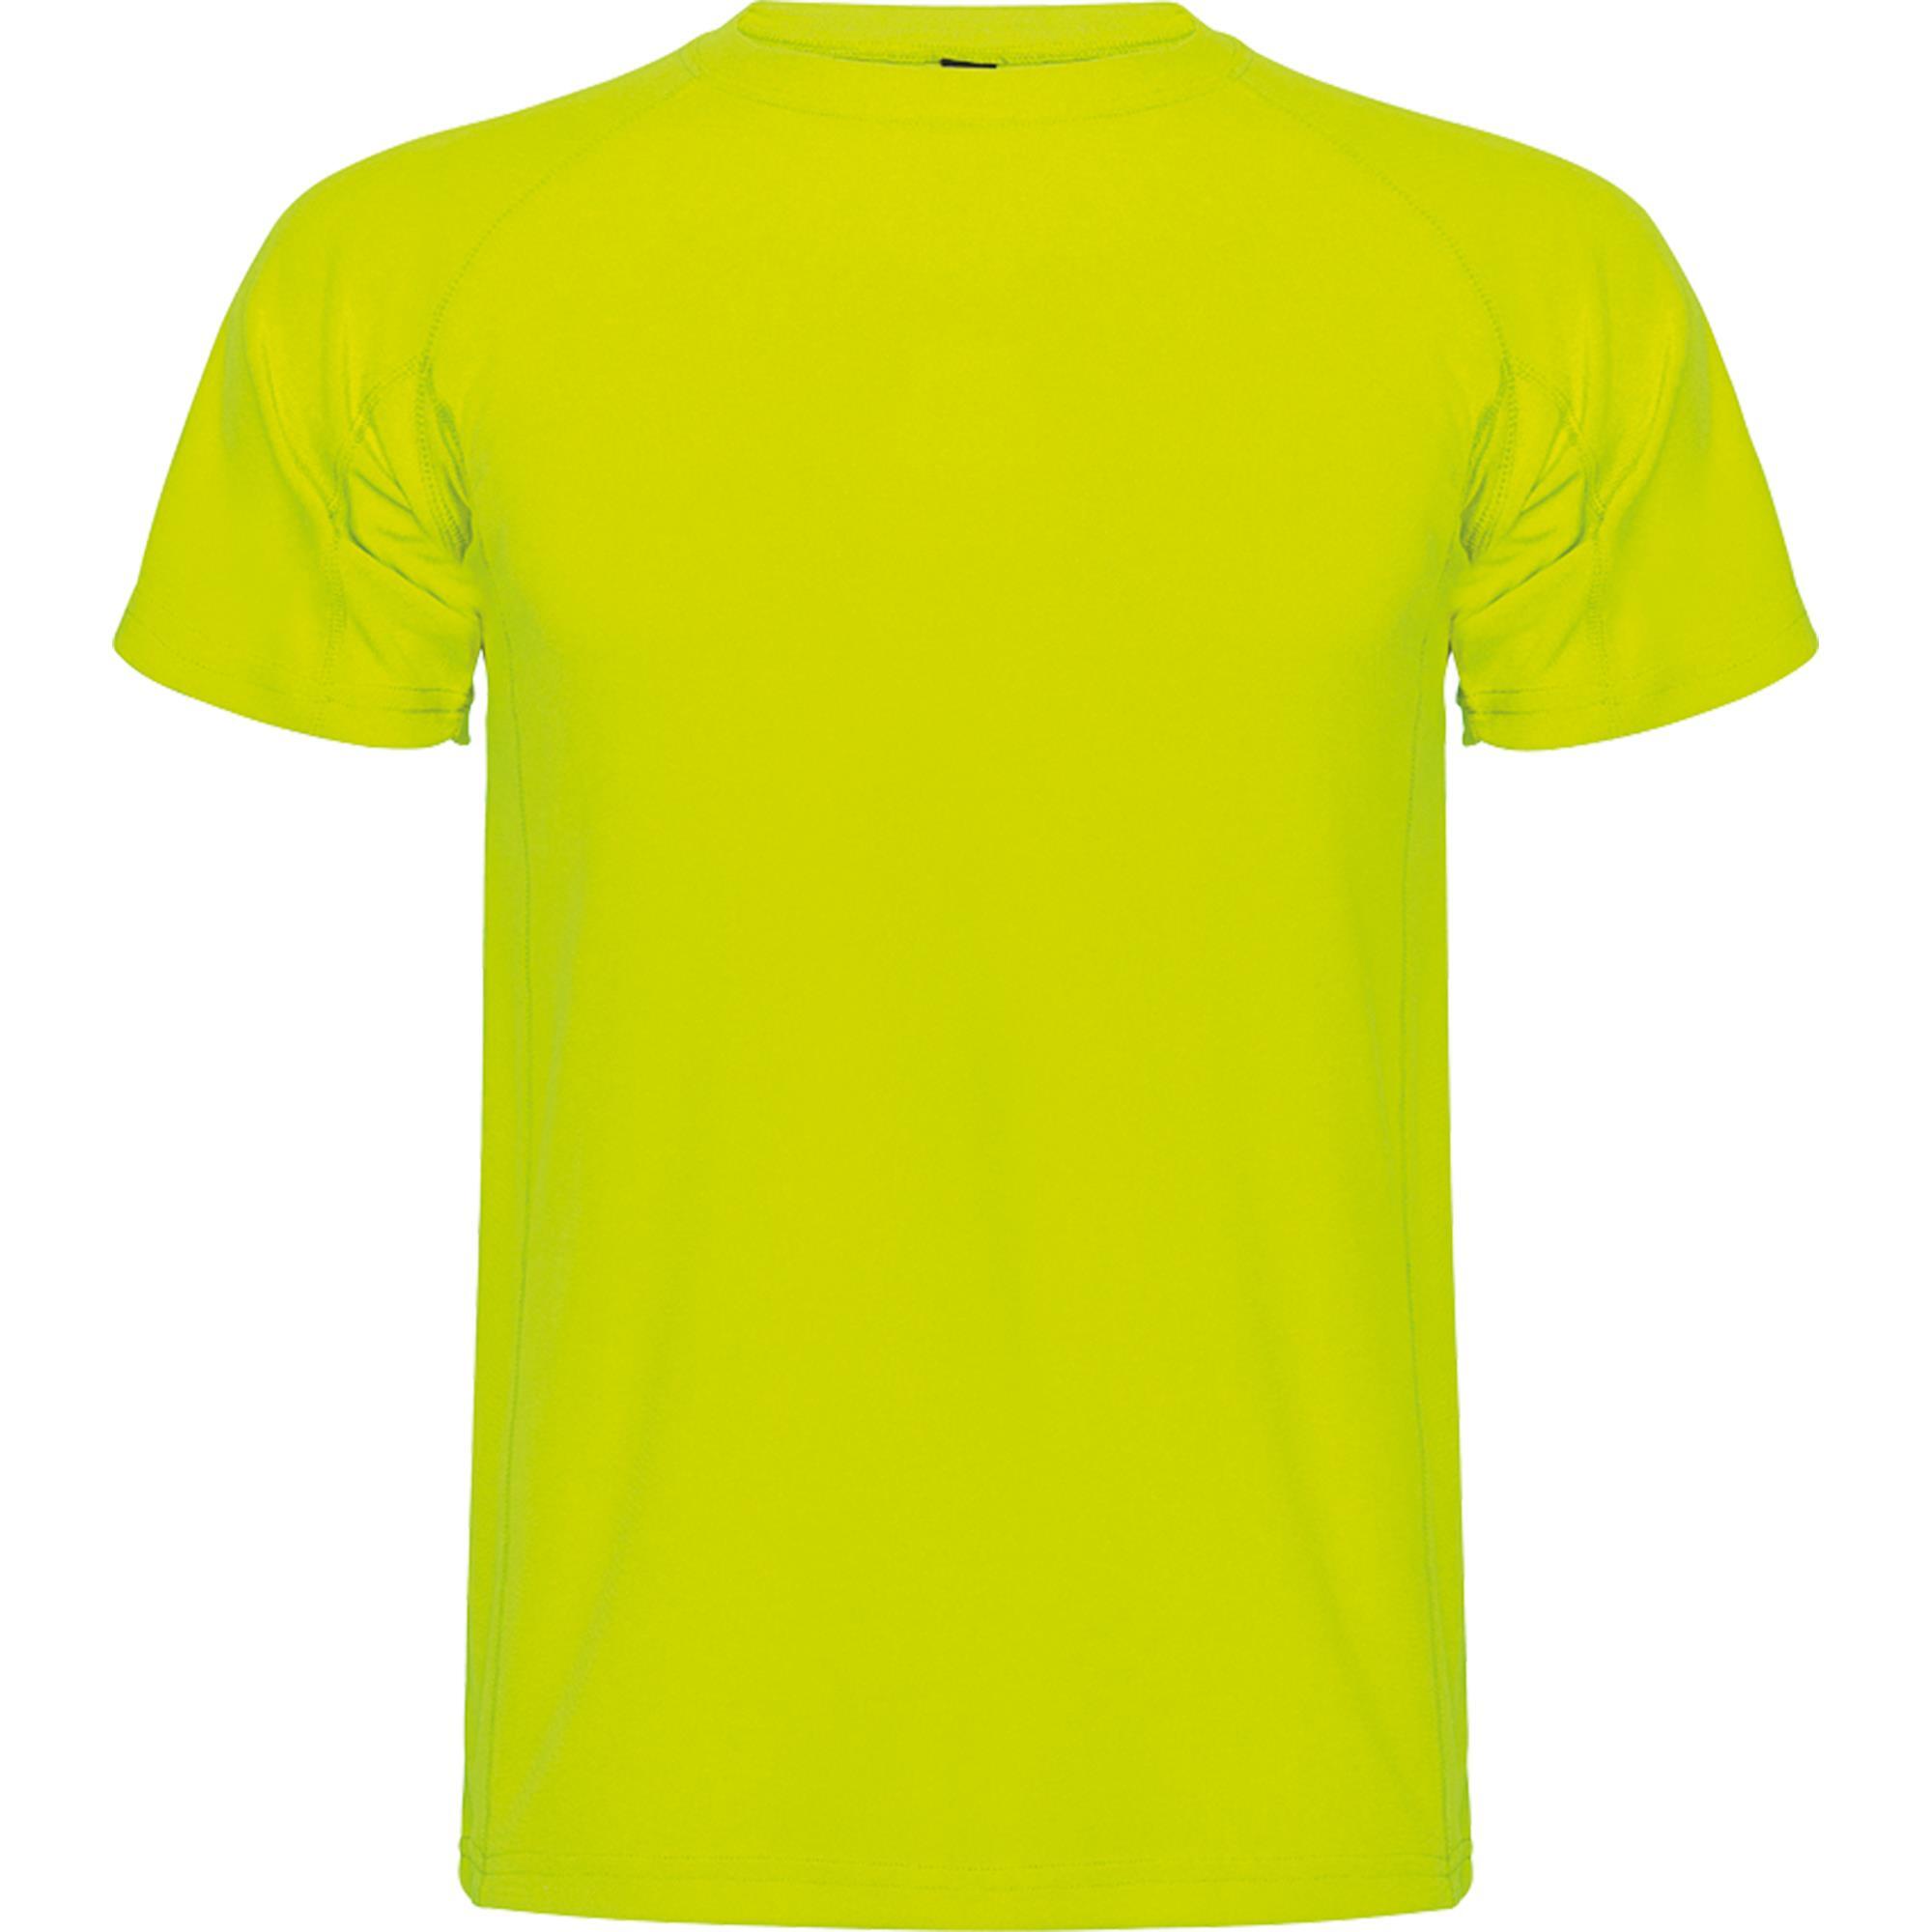 Kinder sportshirt bedrukken!  yellow fluor Sportkleding voor kids